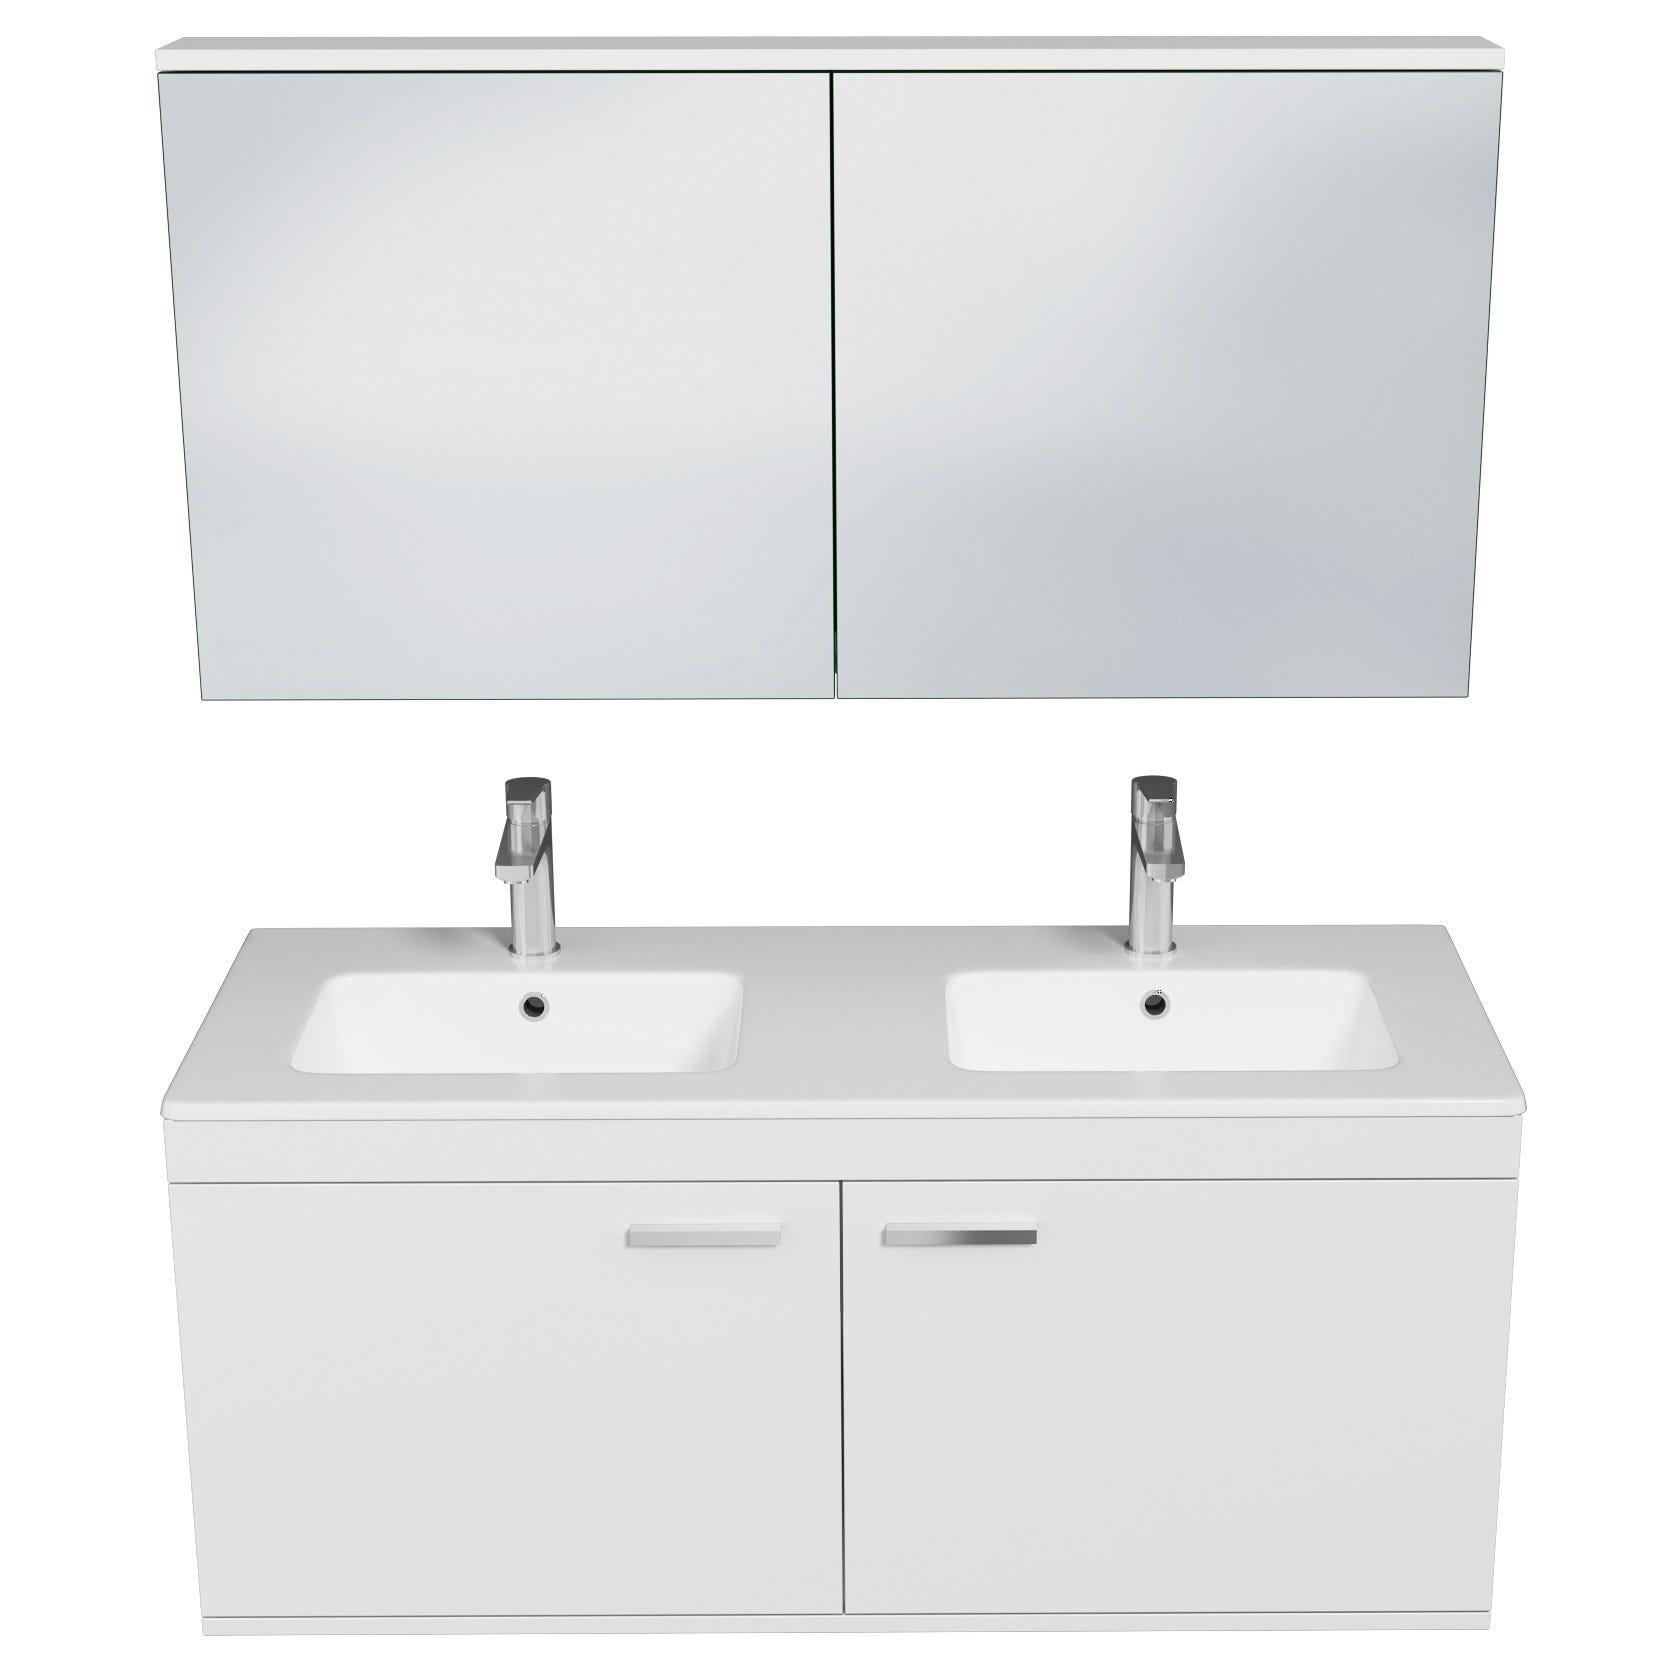 RUBITE Meuble salle de bain double vasque 2 portes blanc largeur 120 cm + miroir armoire 3